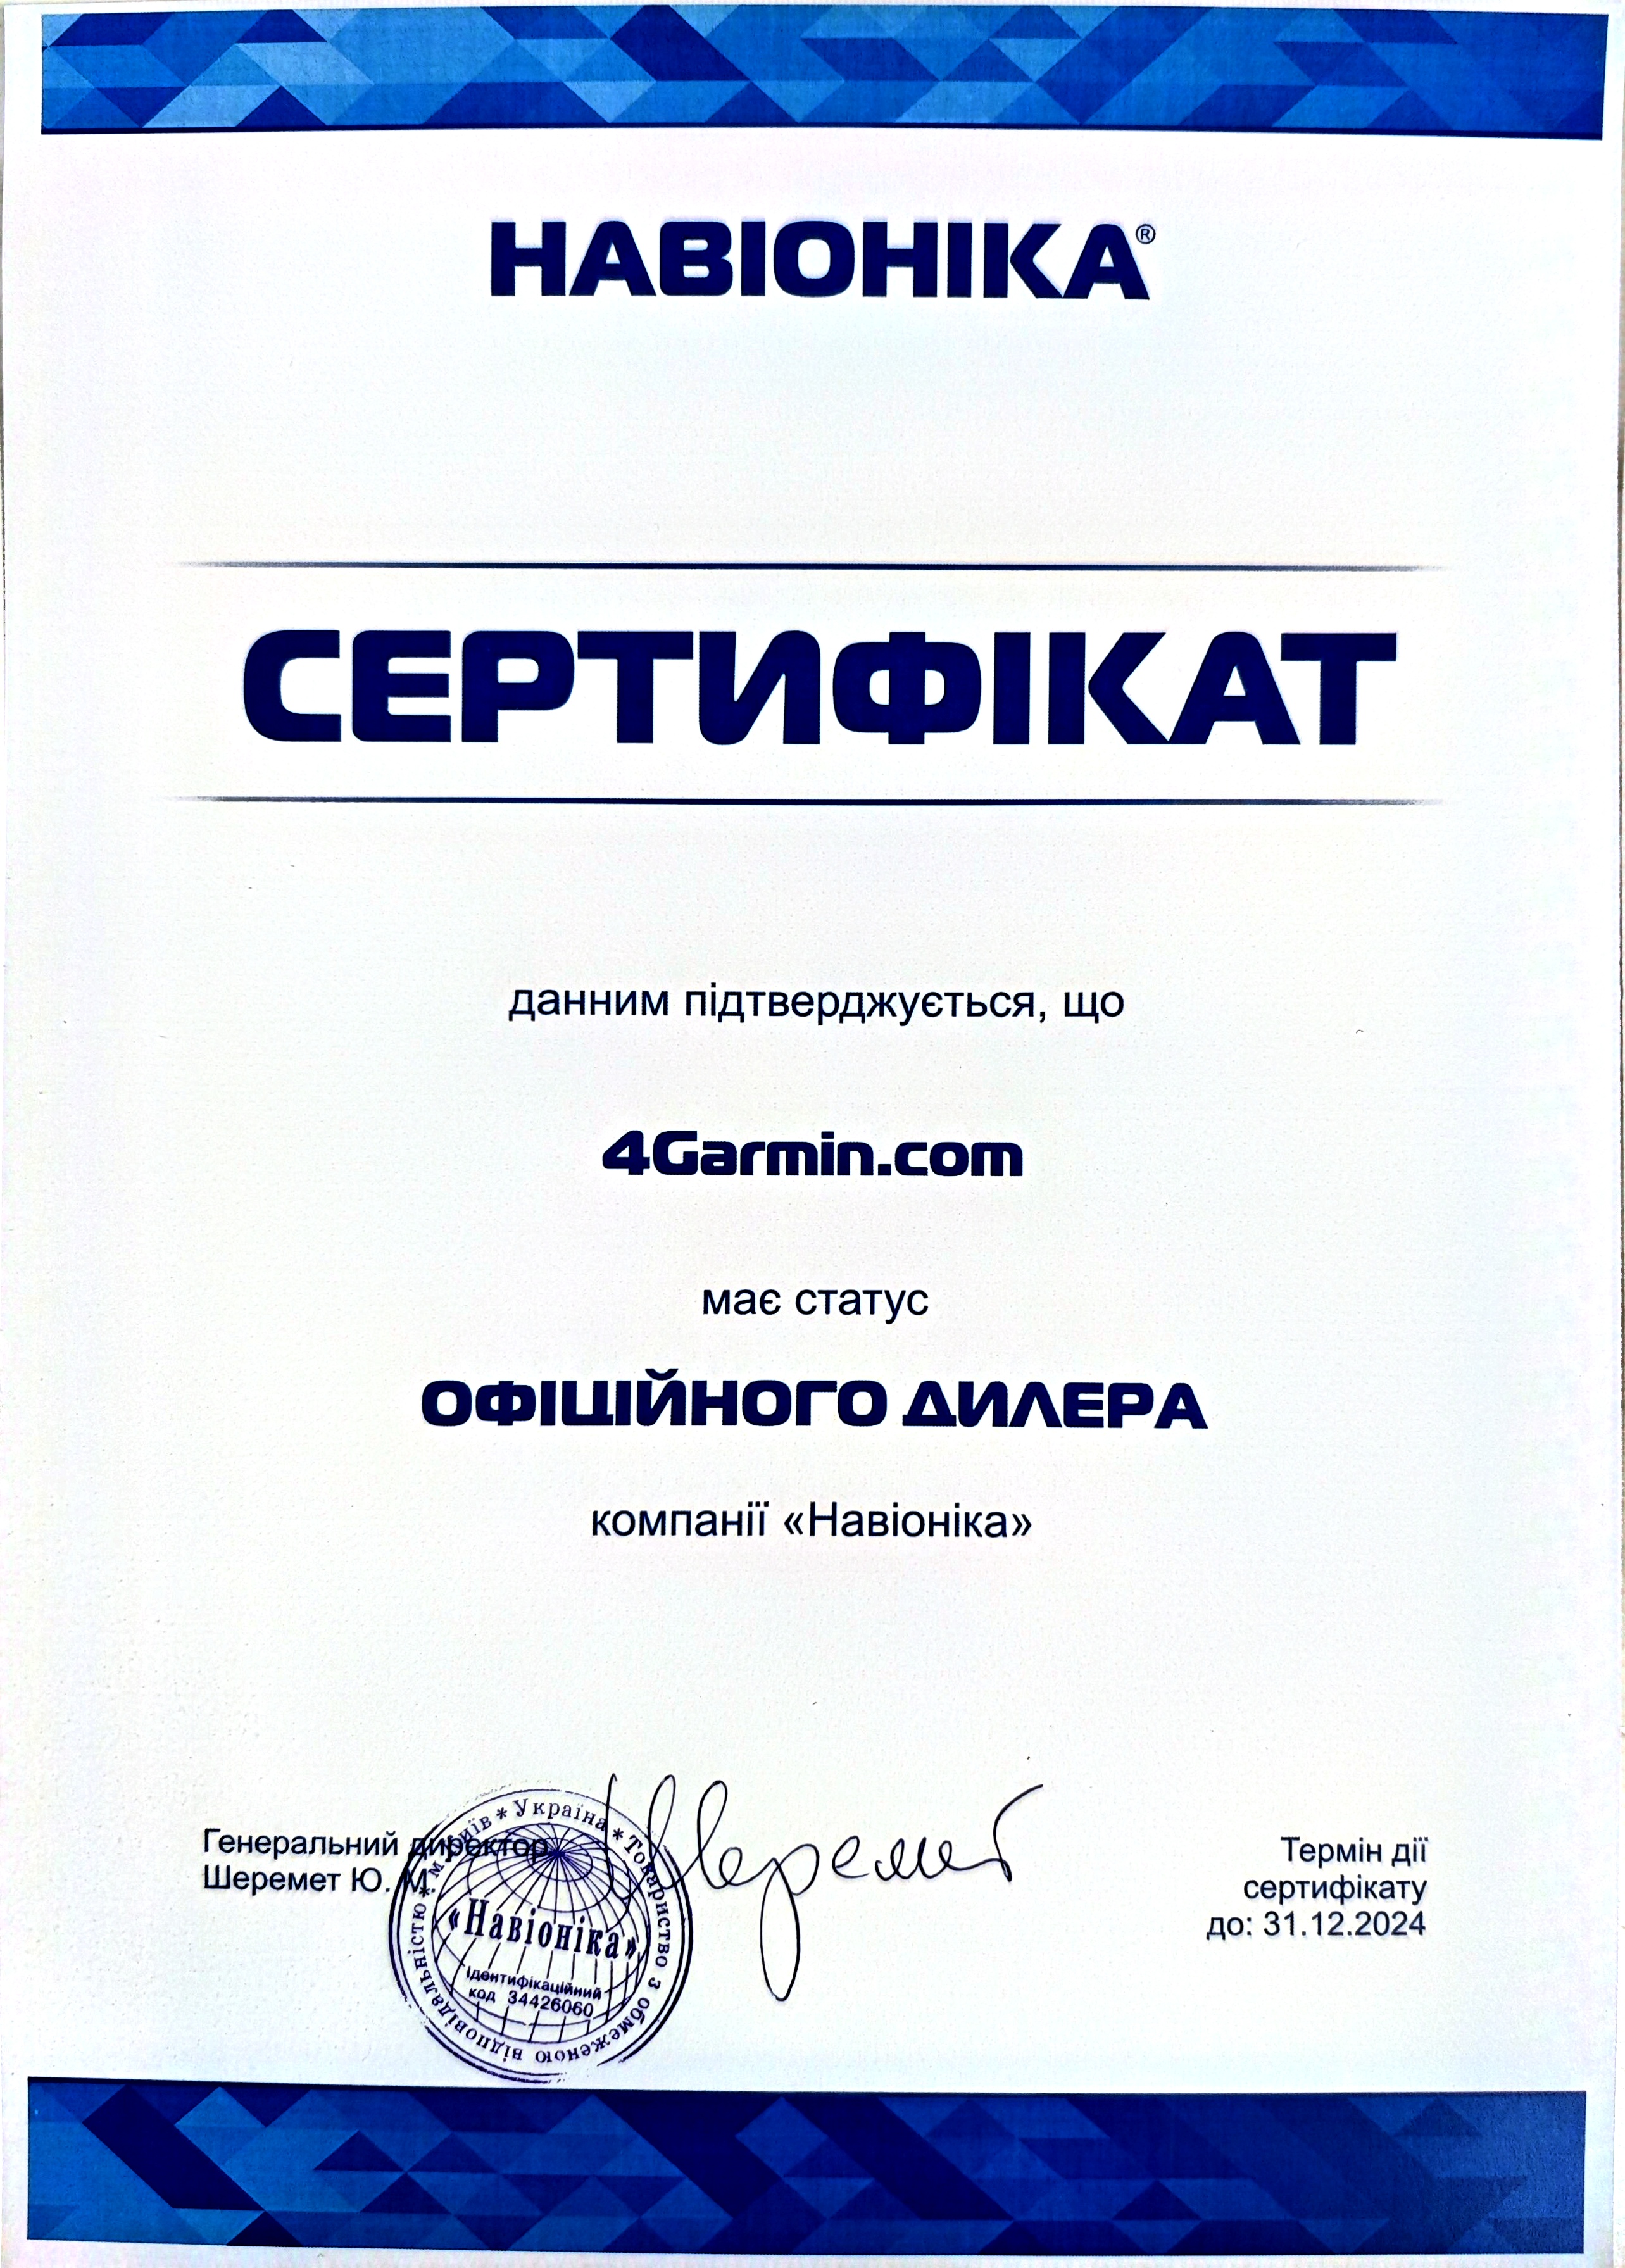 Официальный дилер продукции Garmin - интернет-магазин 4Garmin.com